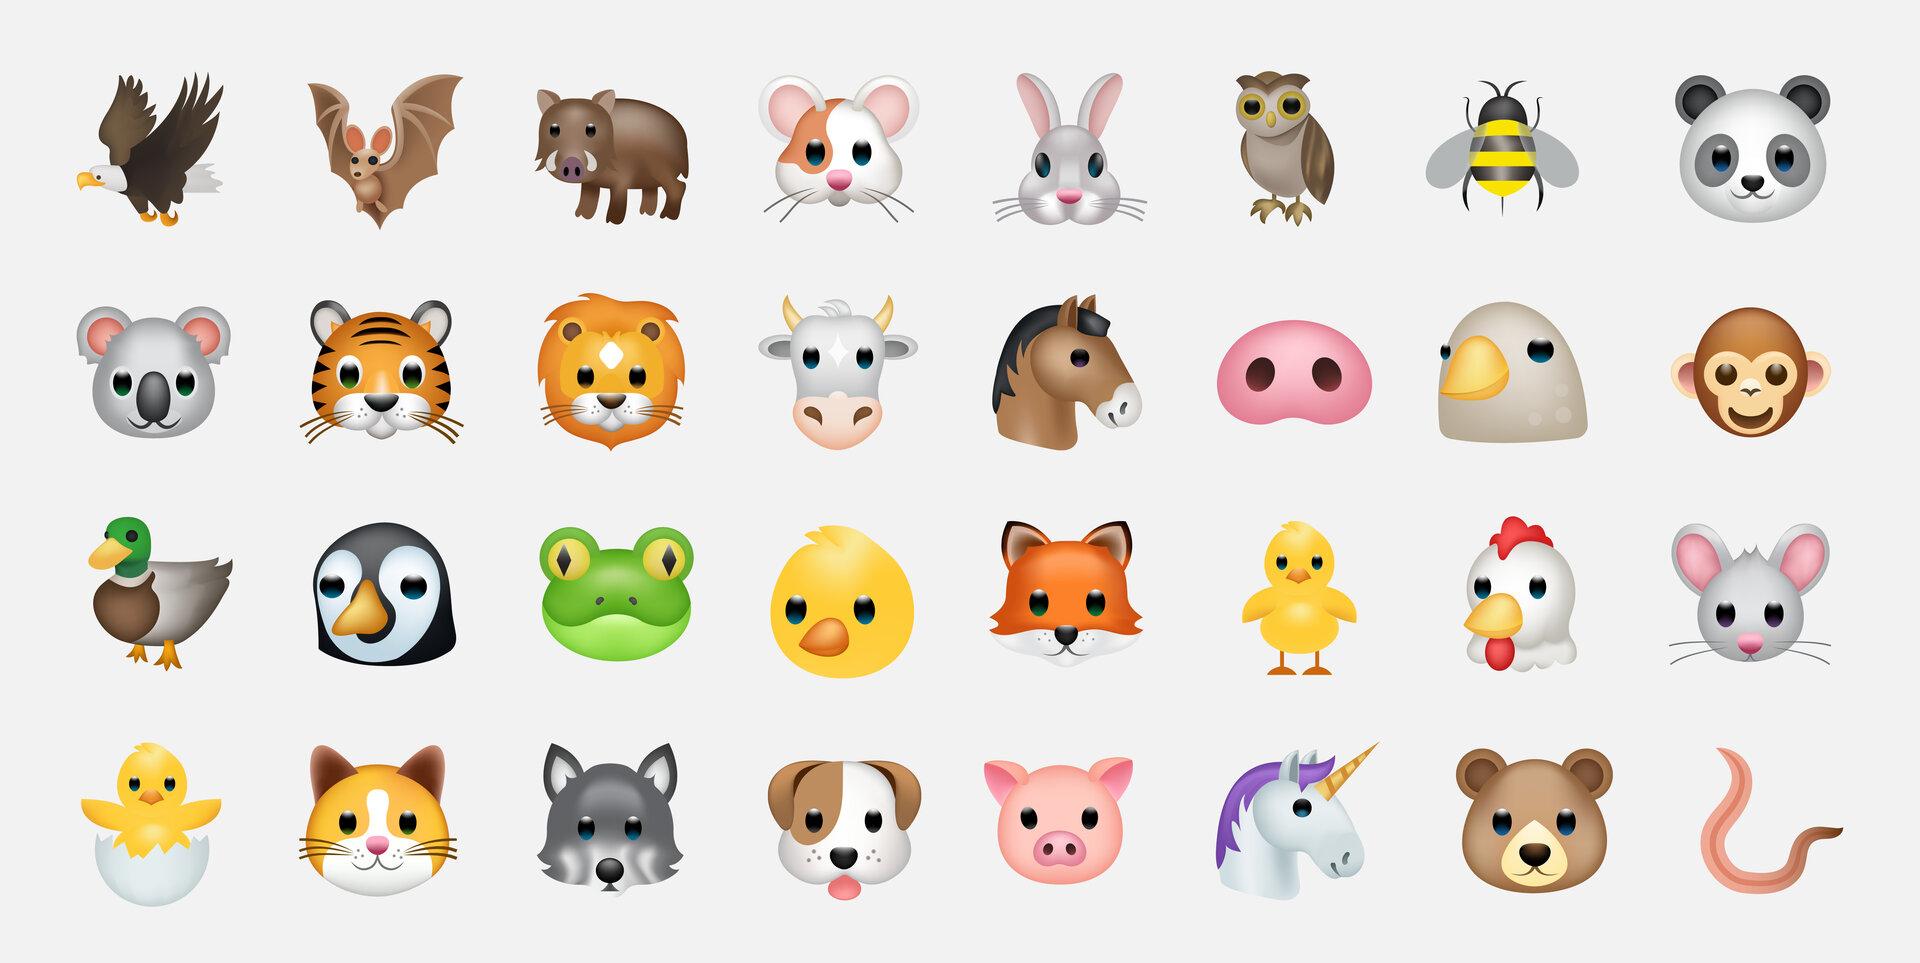 Die Welt der Emojis entspricht nicht der realen Artenvielfalt im Tierreich